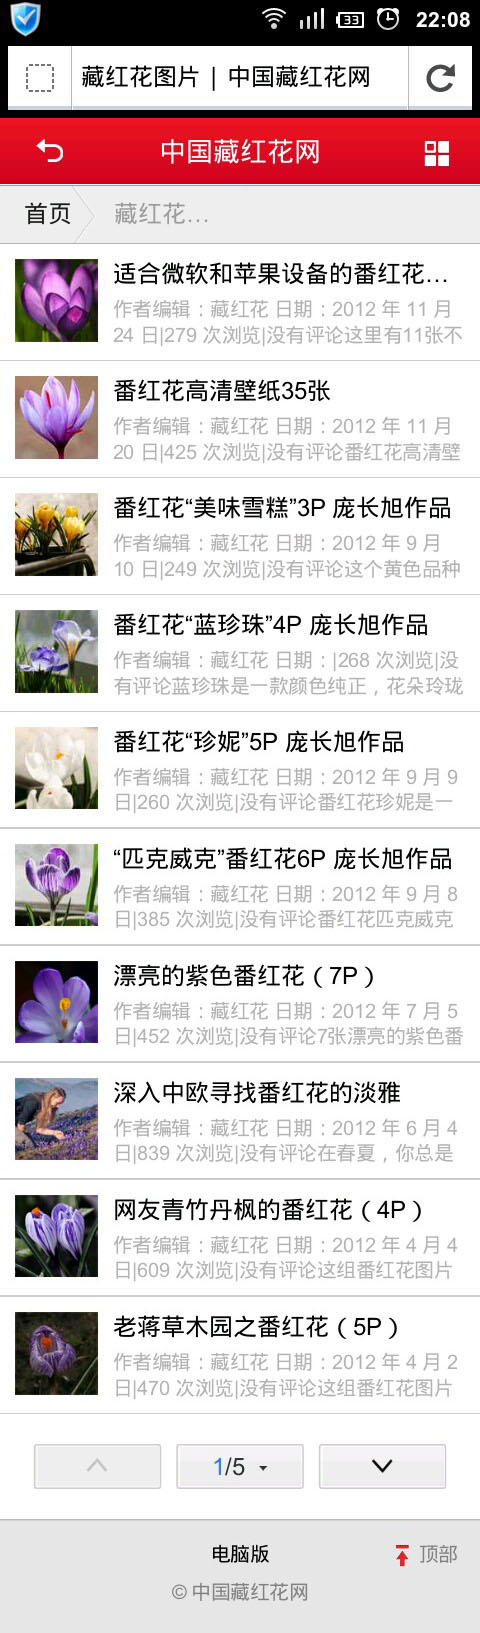 中国藏红花网手机版 栏目页面